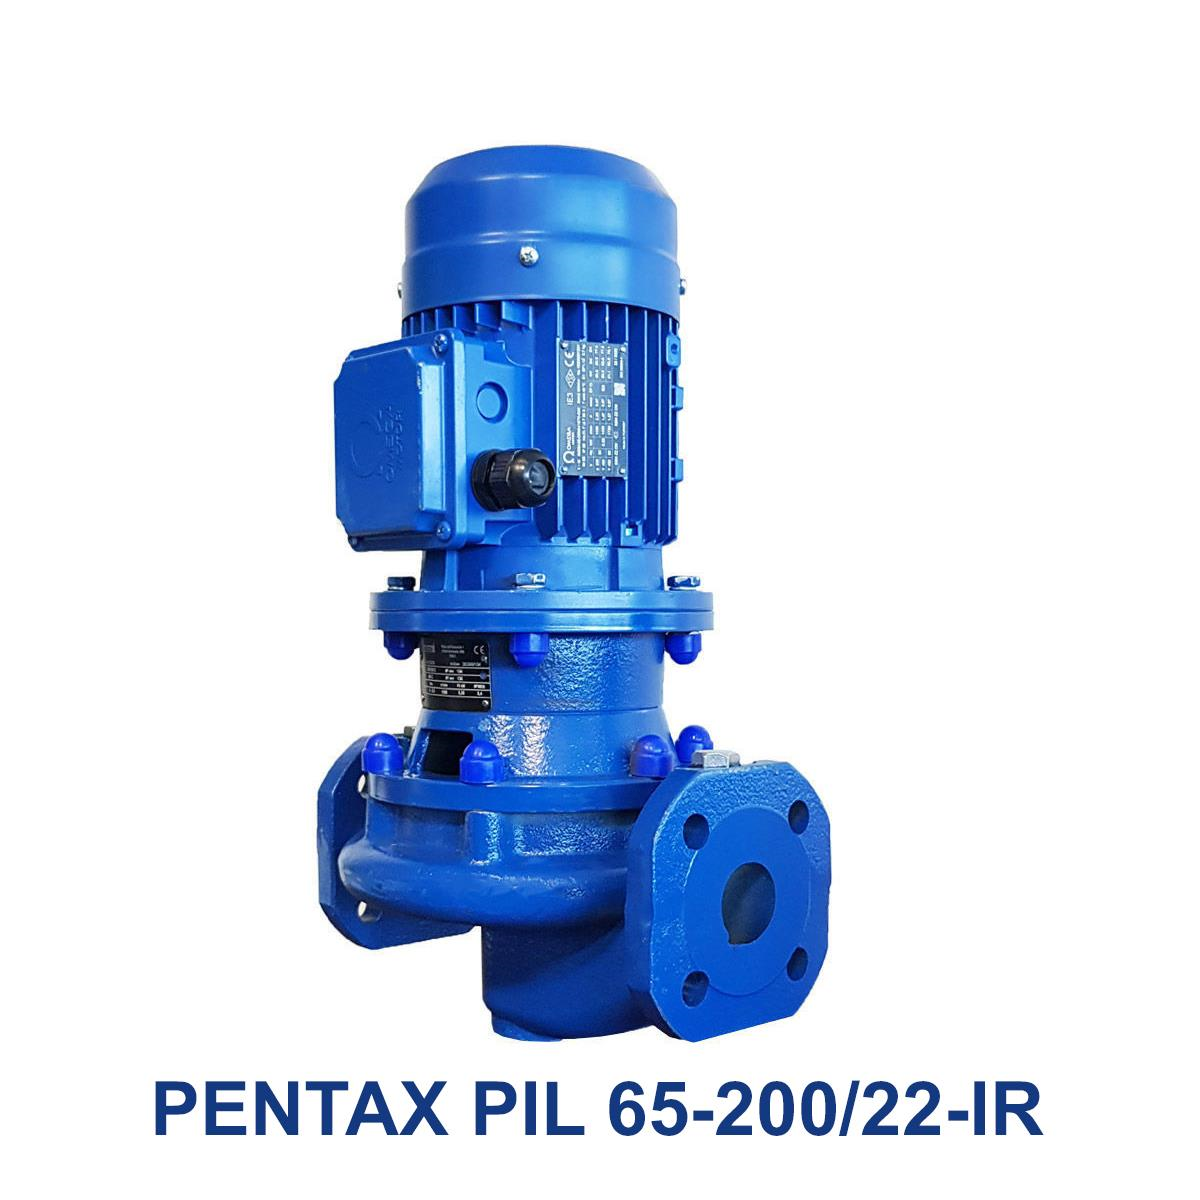 PENTAX-PIL-65-200-22-IR